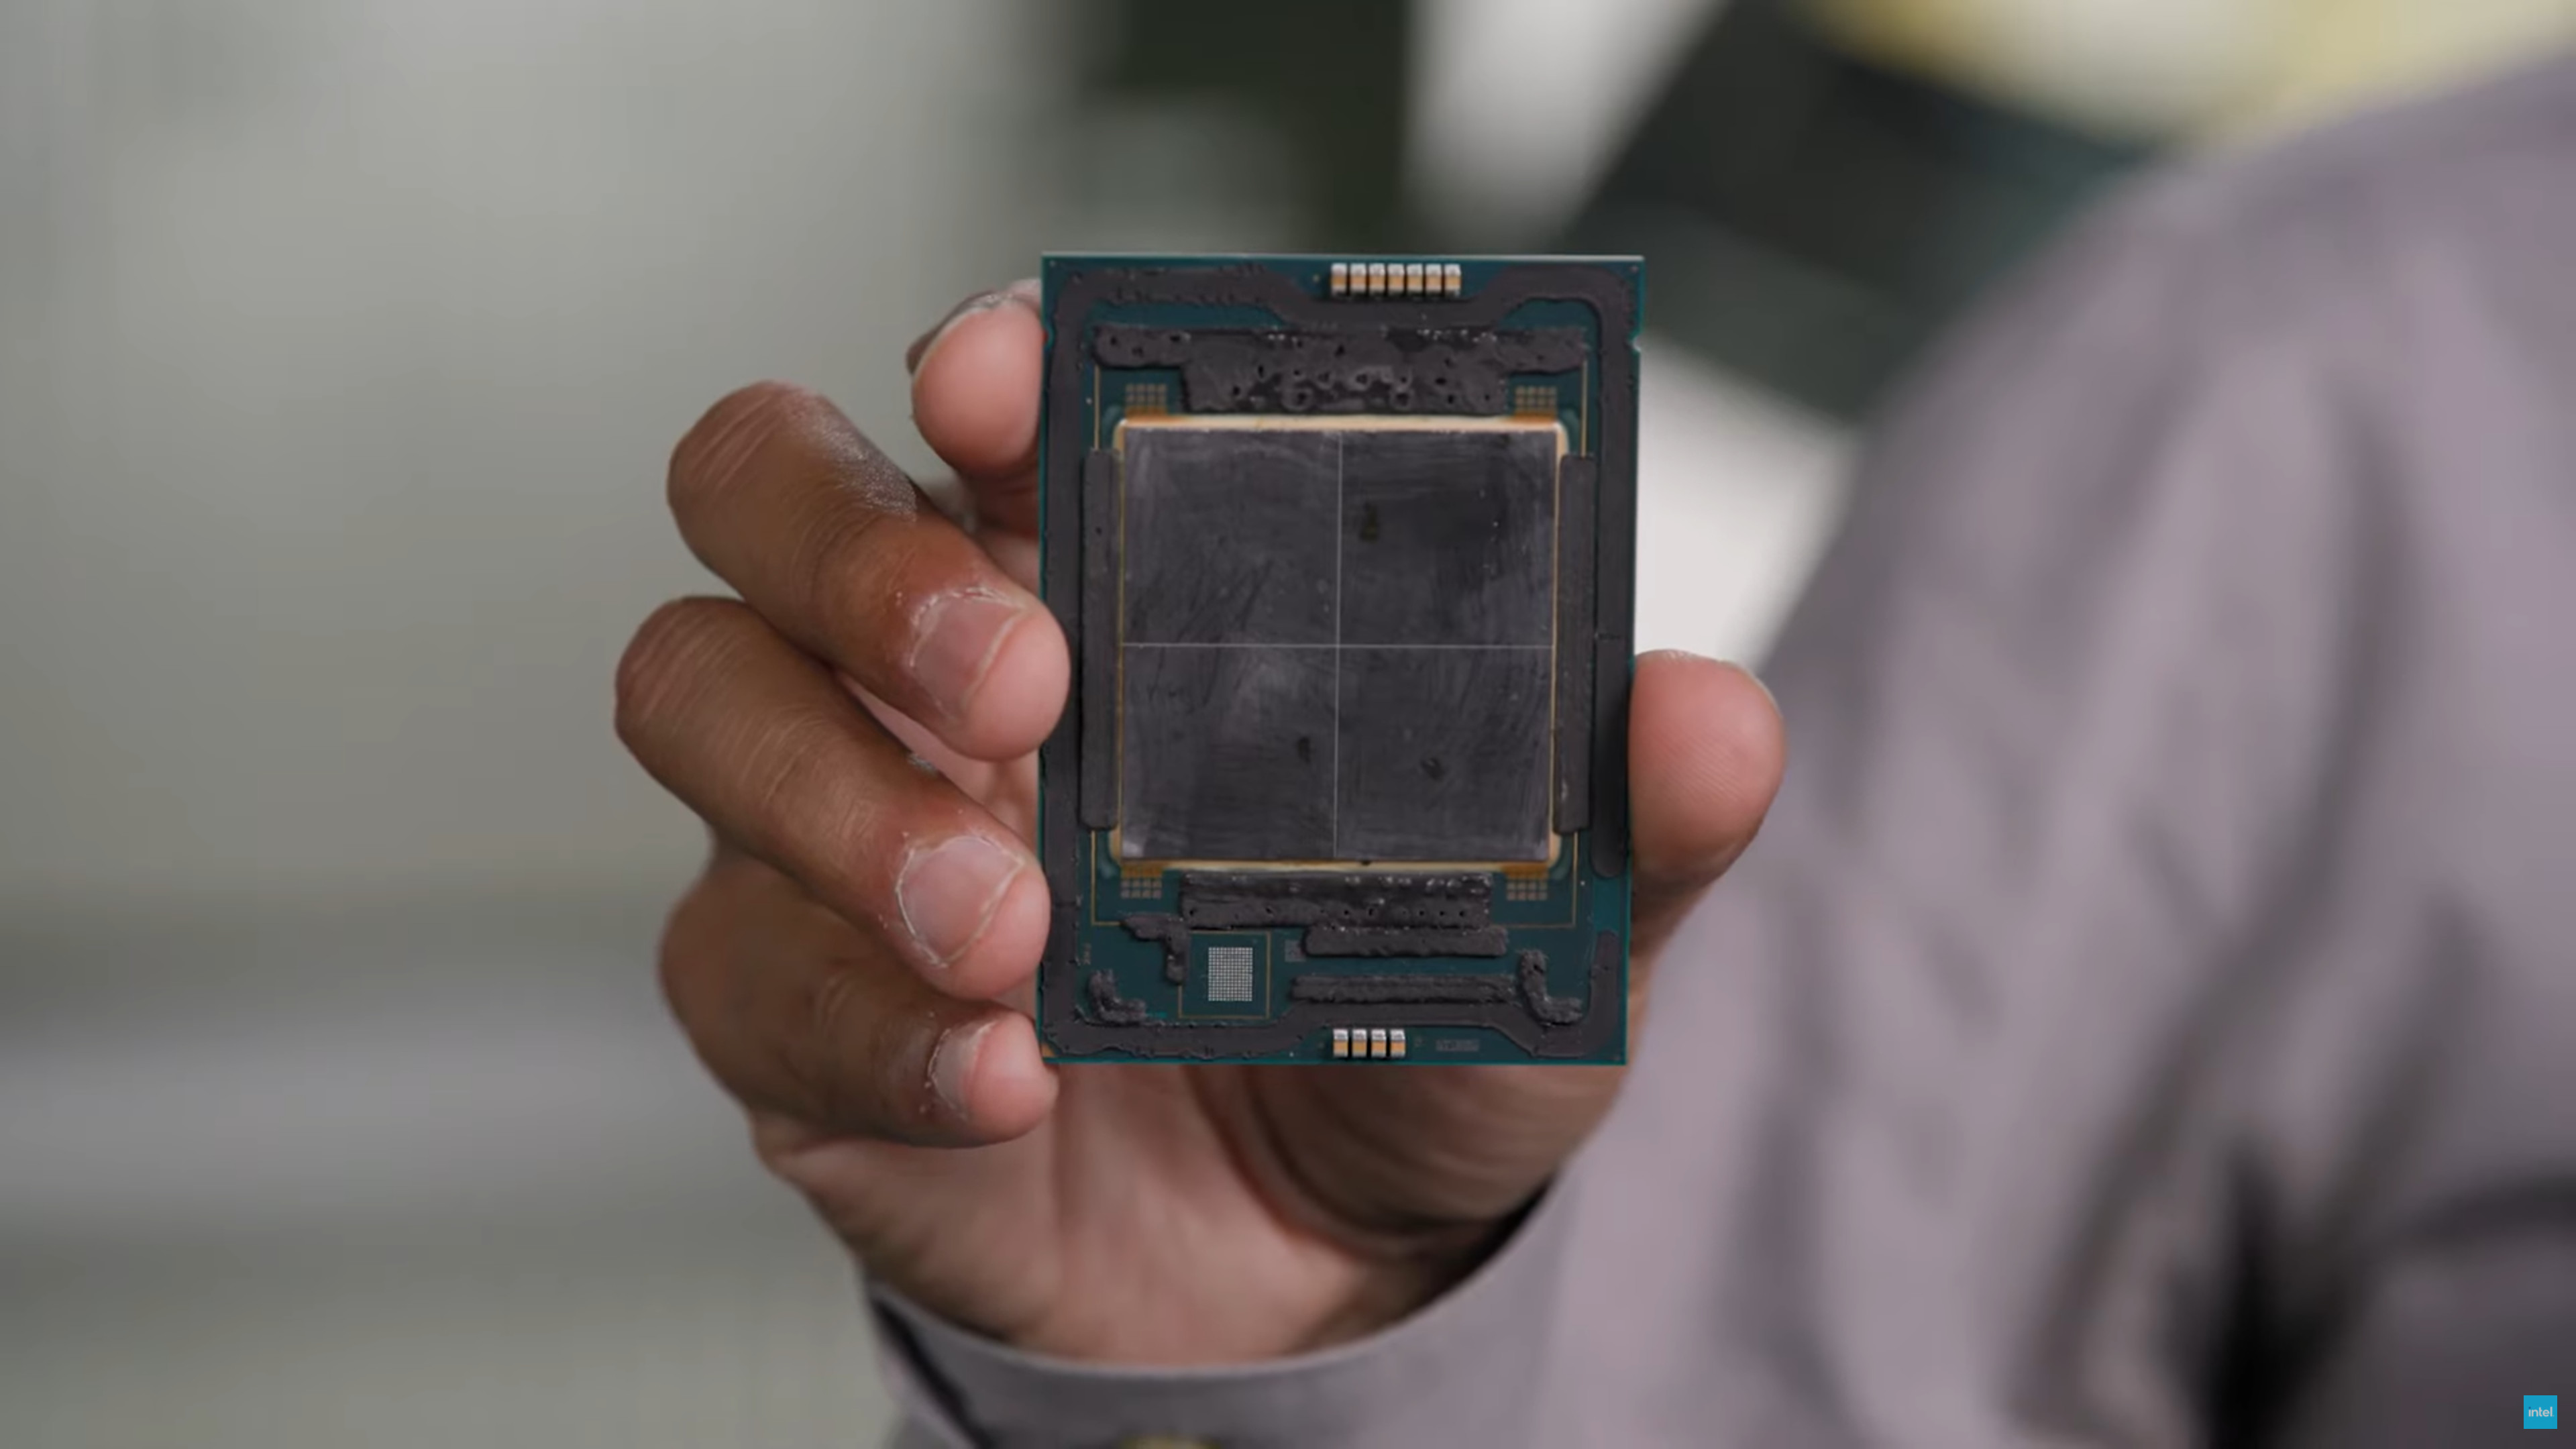 CPU Intel Xeon W9-3495 Sapphire Rapids HEDT Spotted - Rocks 56 lõi, 112 luồng & tốc độ xung nhịp 1,80 GHz ES